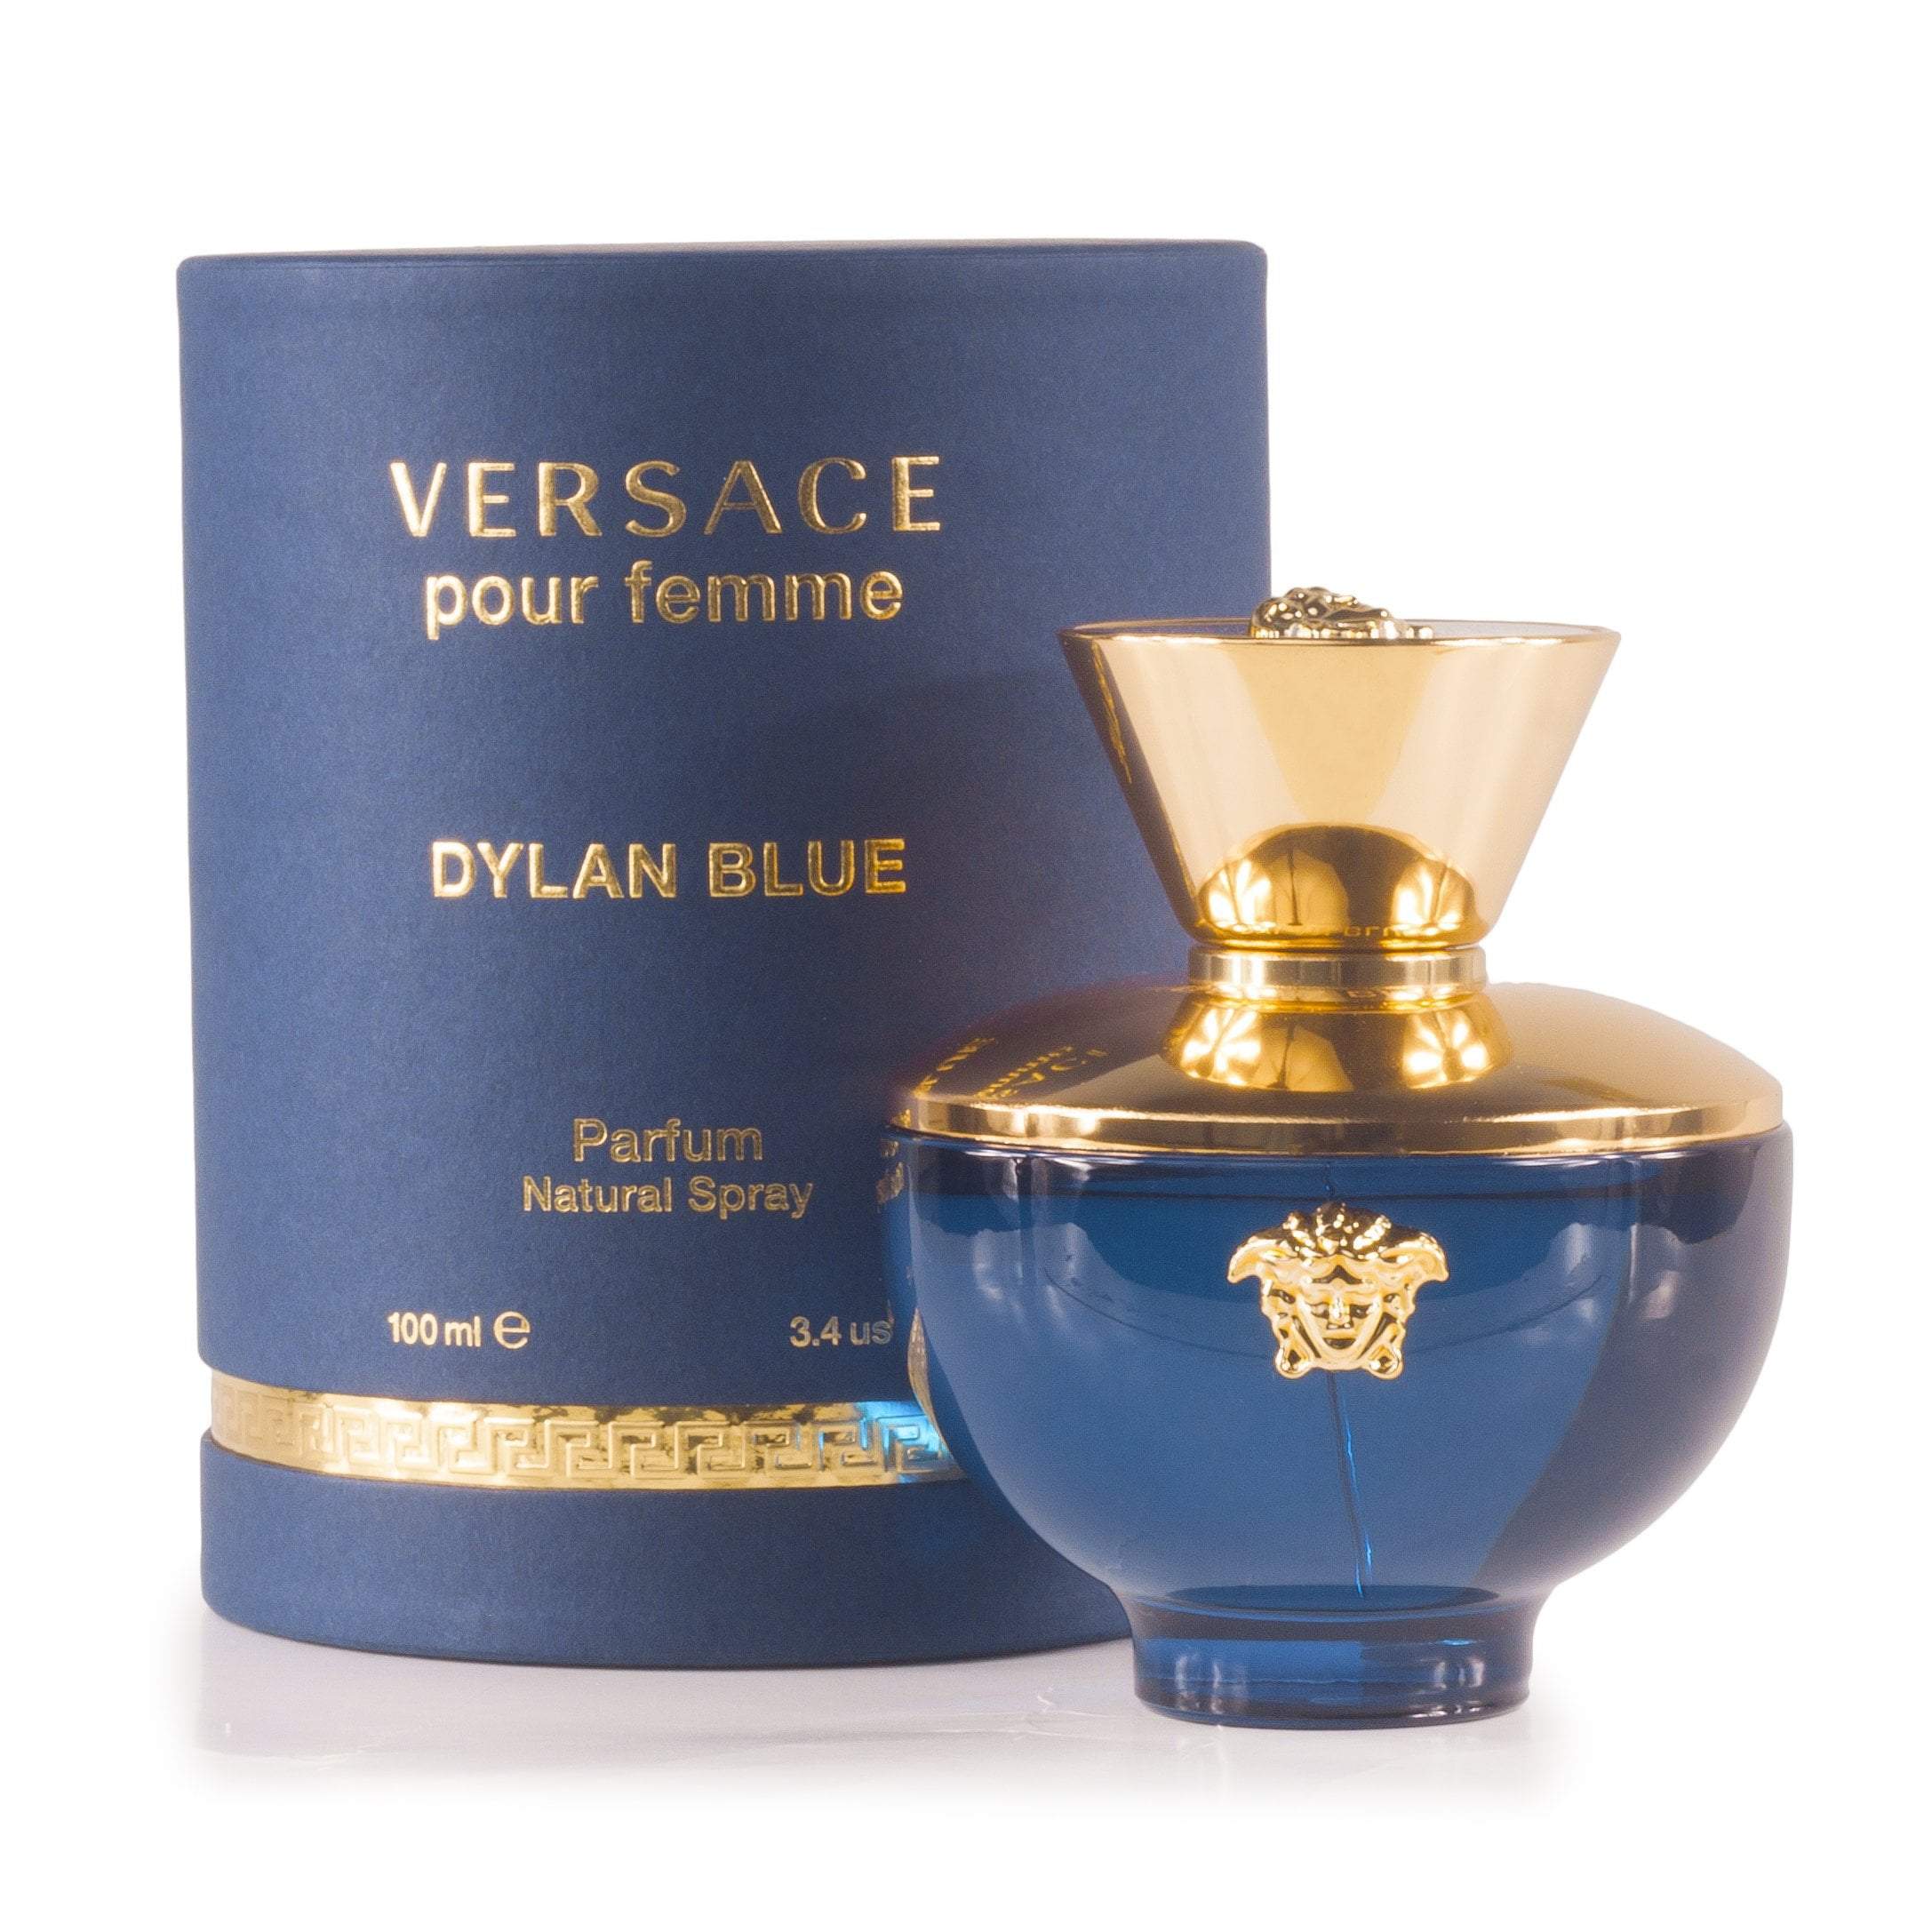 versace women perfume, OFF 73%,Buy!